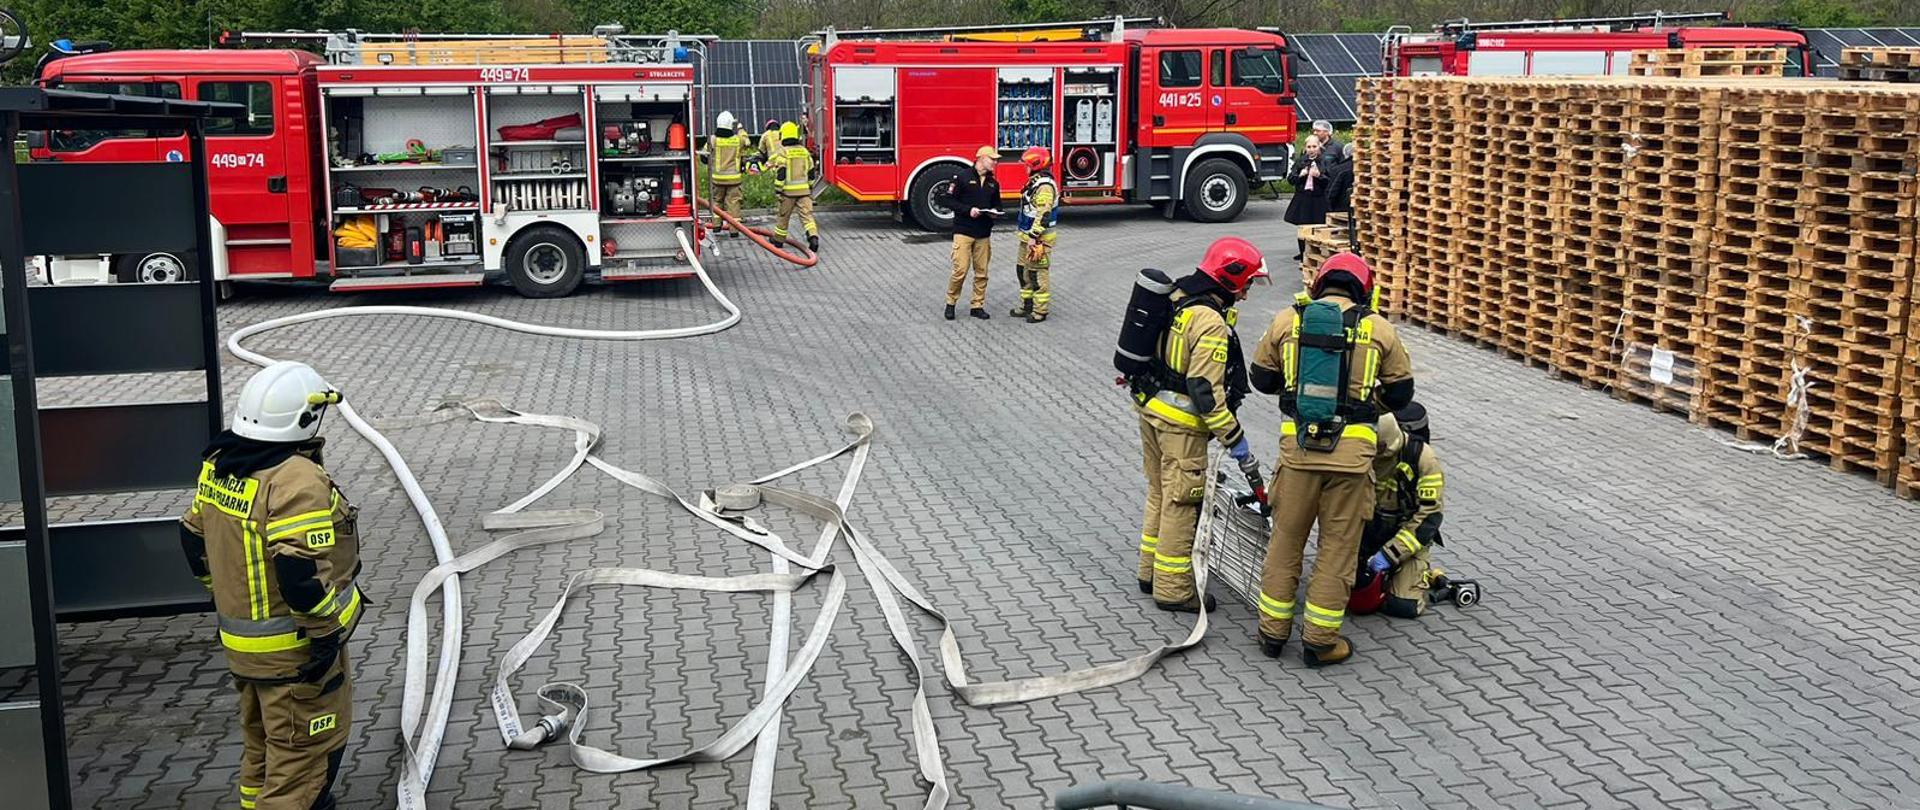 Strażacy przy samochodach pożarniczych, z których rozwinięte są linie gaśnicze troje ze strażaków przygotowuje się do wejścia do budynku szykują sprzęt zakładają aparaty powietrzne 